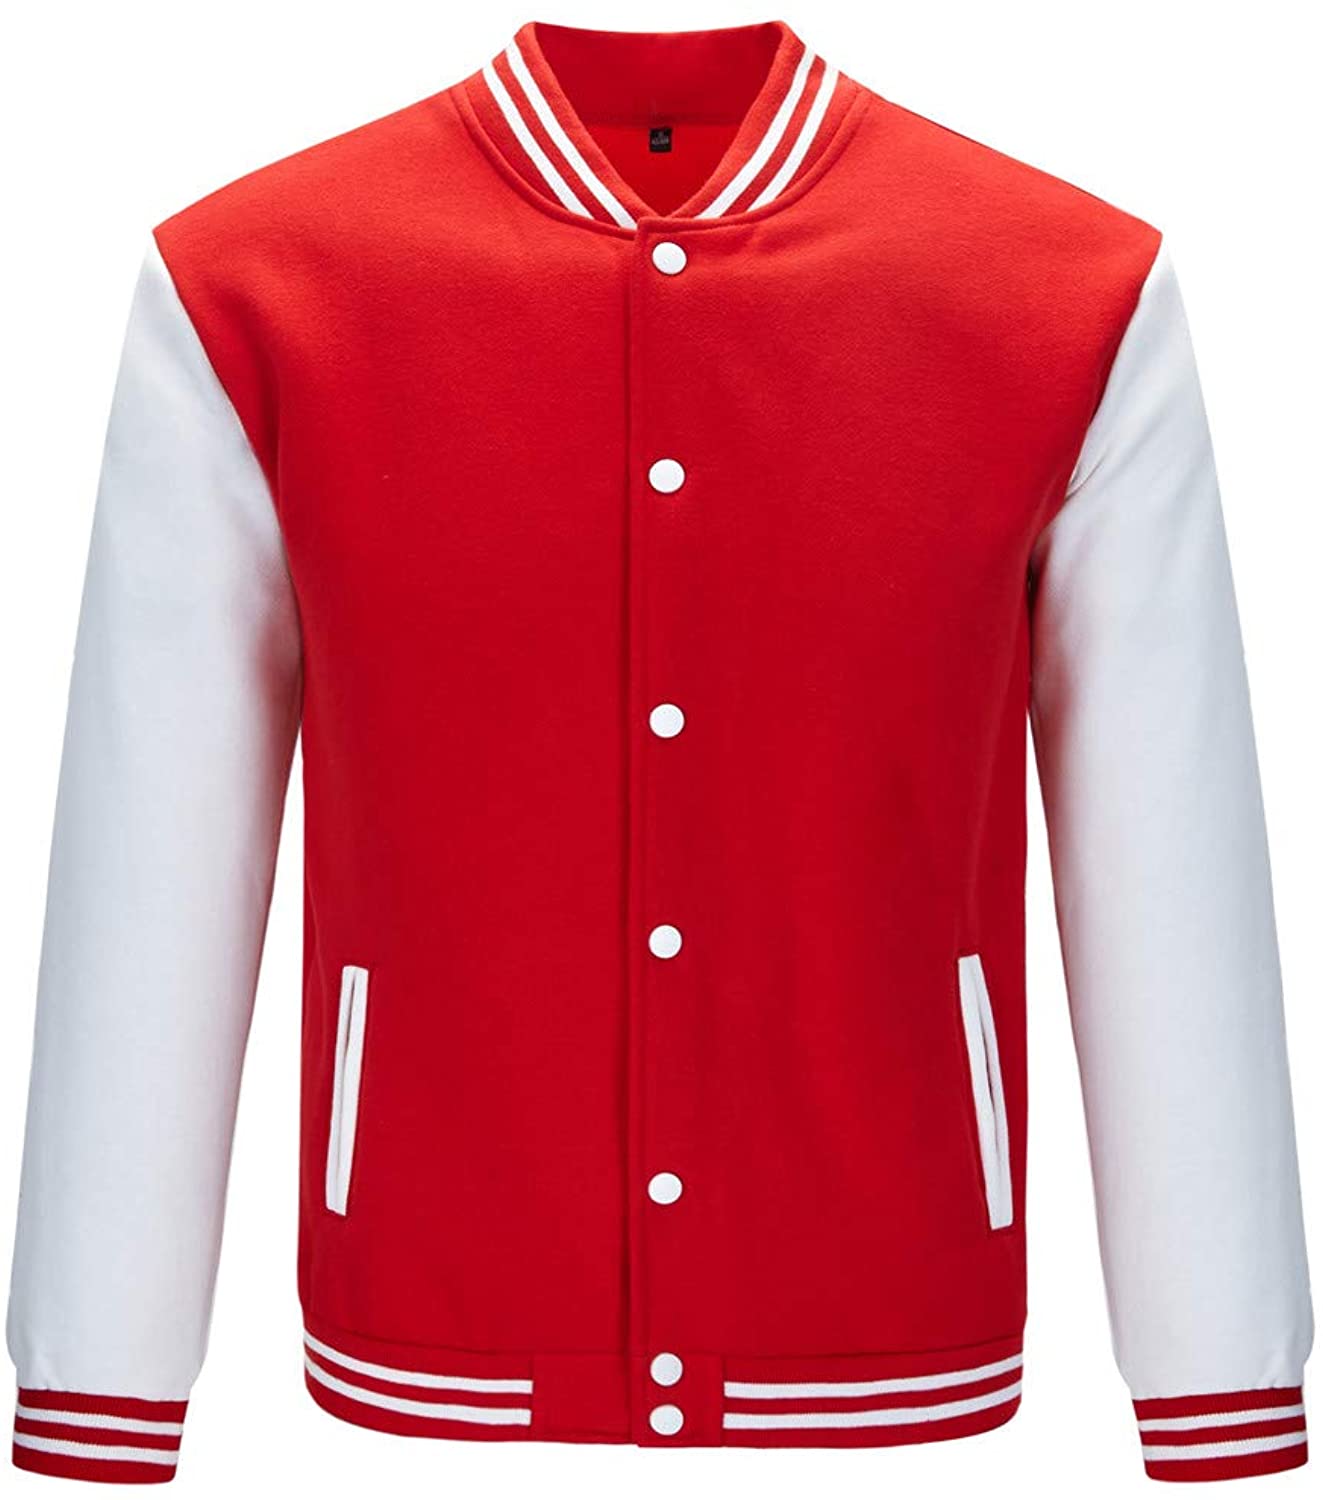 TRIFUNESS Varsity Jacket Letterman Baseball Jacket Long Sleeve Bande | eBay